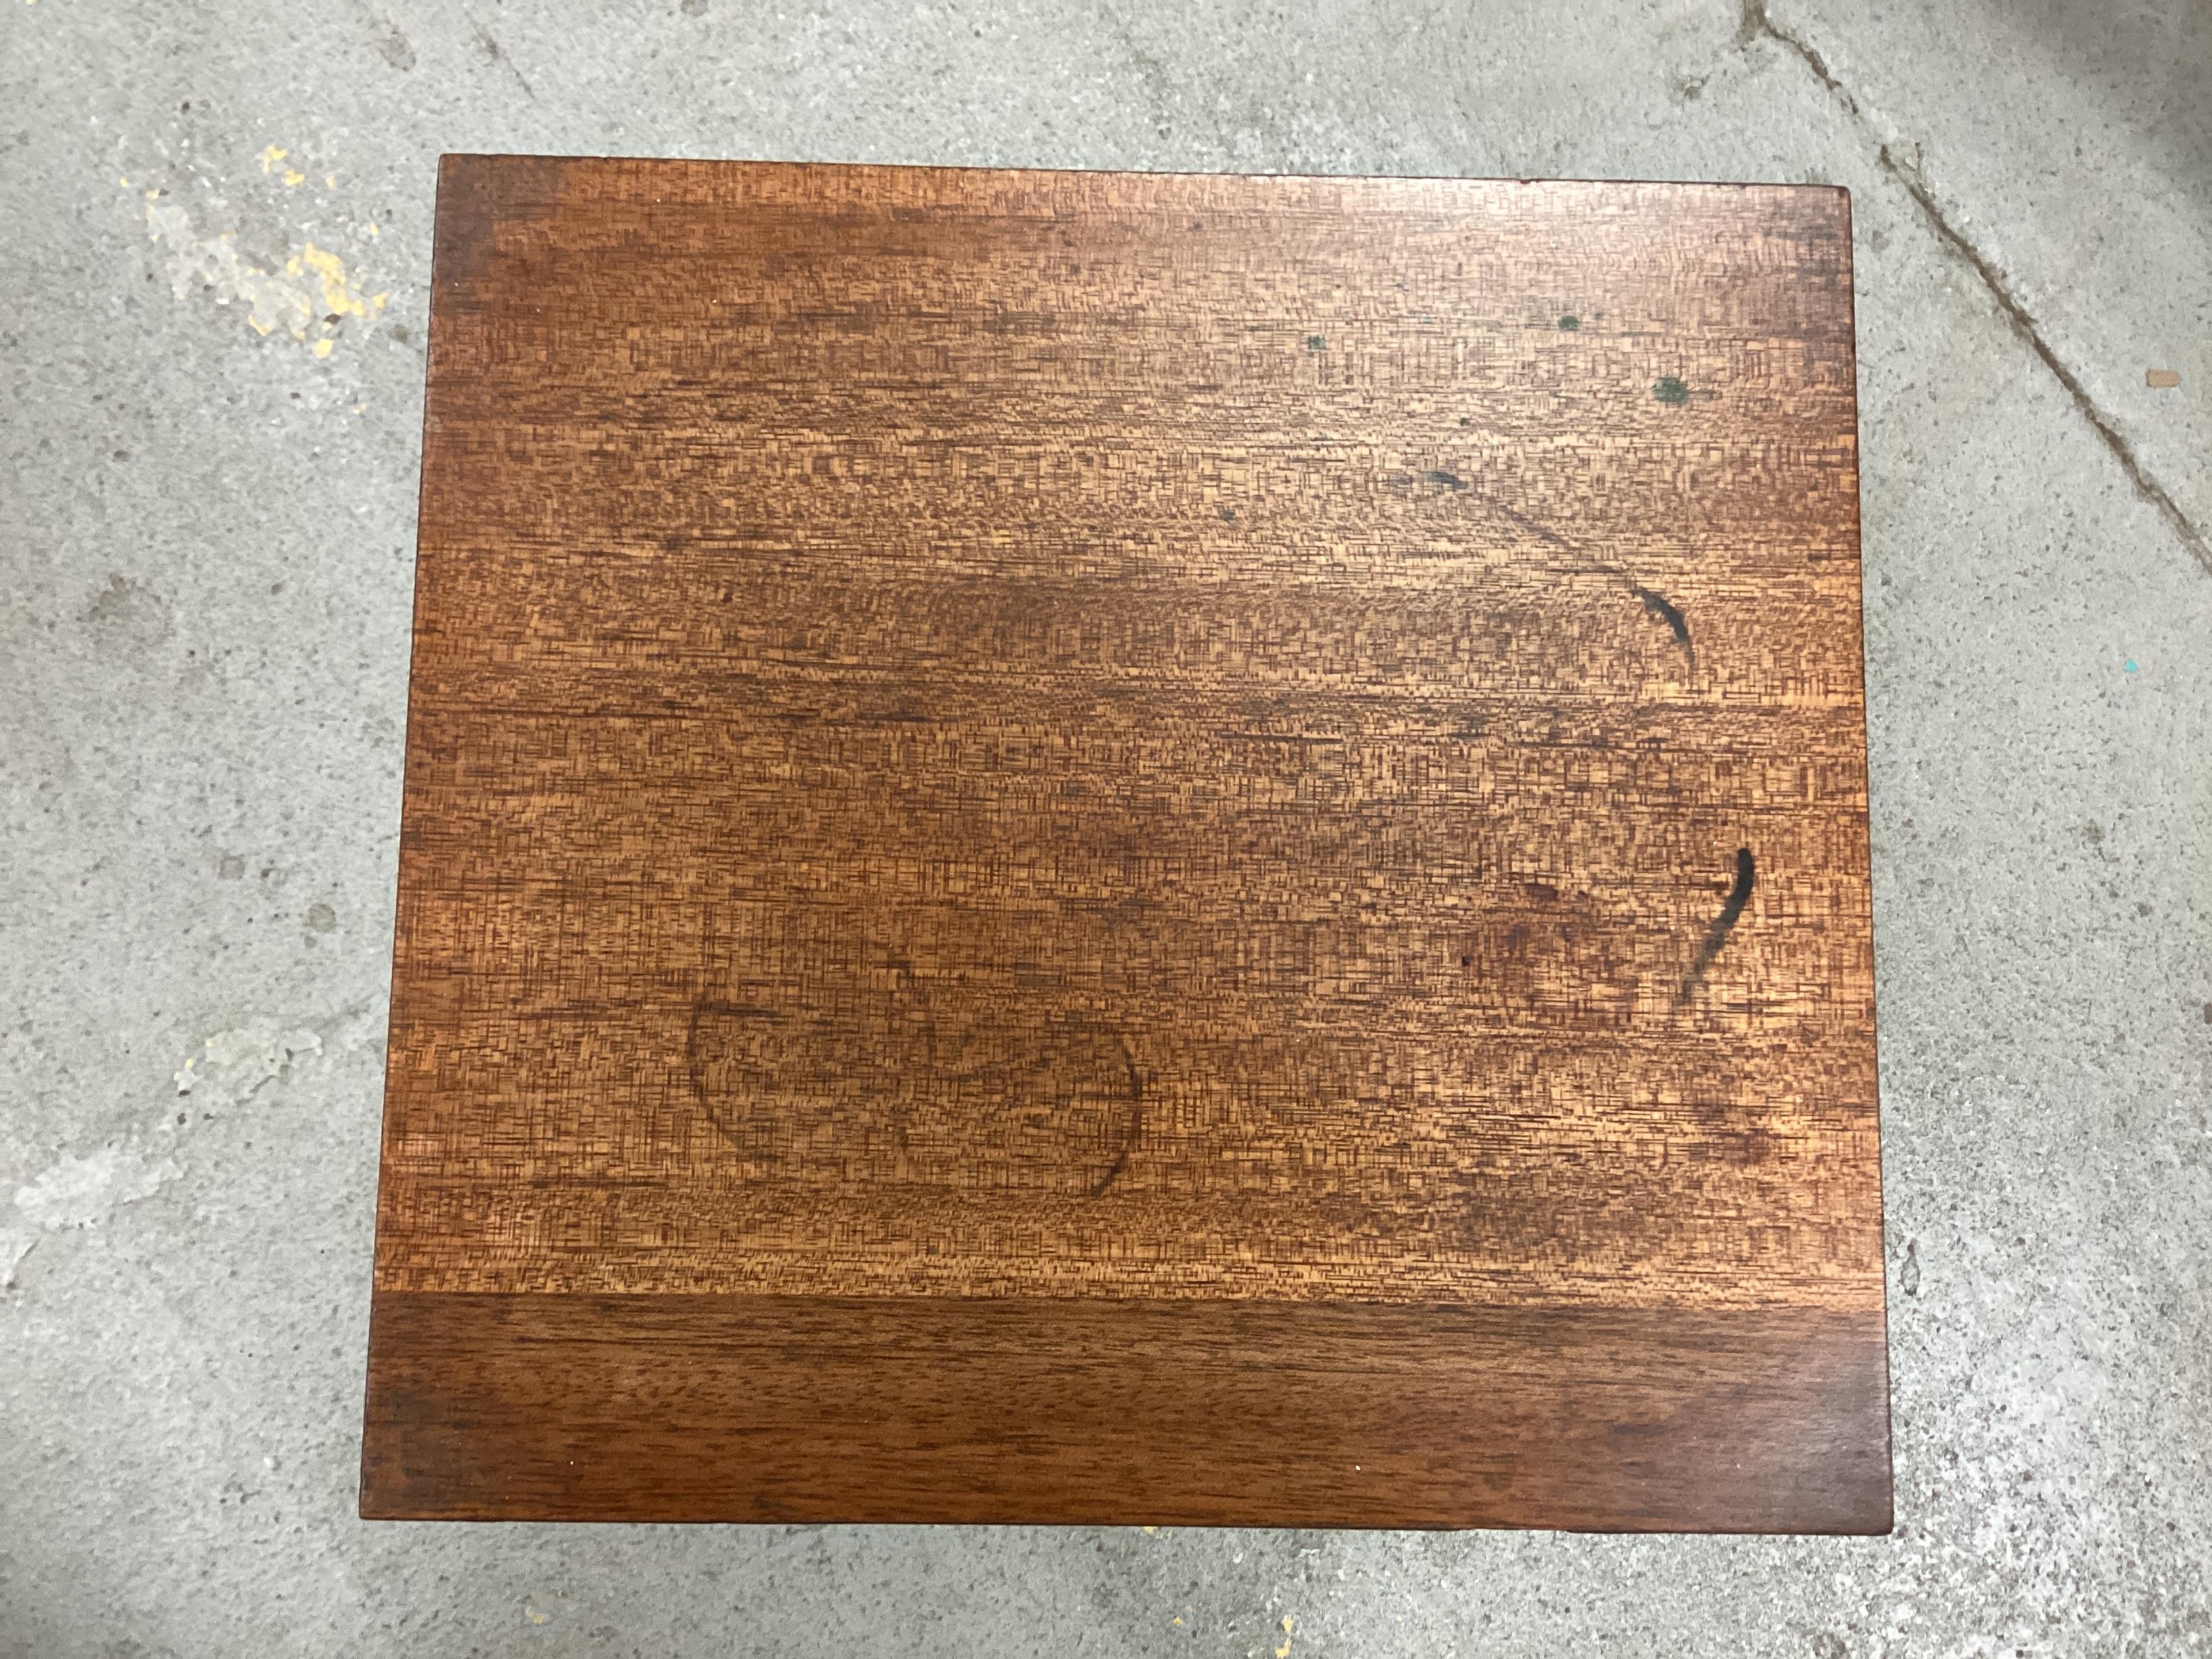 Mahagoni-Furnier auf Holz und Stahl, ein elementarer Tisch von Will Stone aus der Mitte der 1980er Jahre. Bekannt für seine Stahl- und Glassockeltische mit verschnörkelten Beinen, ist dieser Entwurf mit Holzplatte seltener zu sehen. Ziemlich schwer